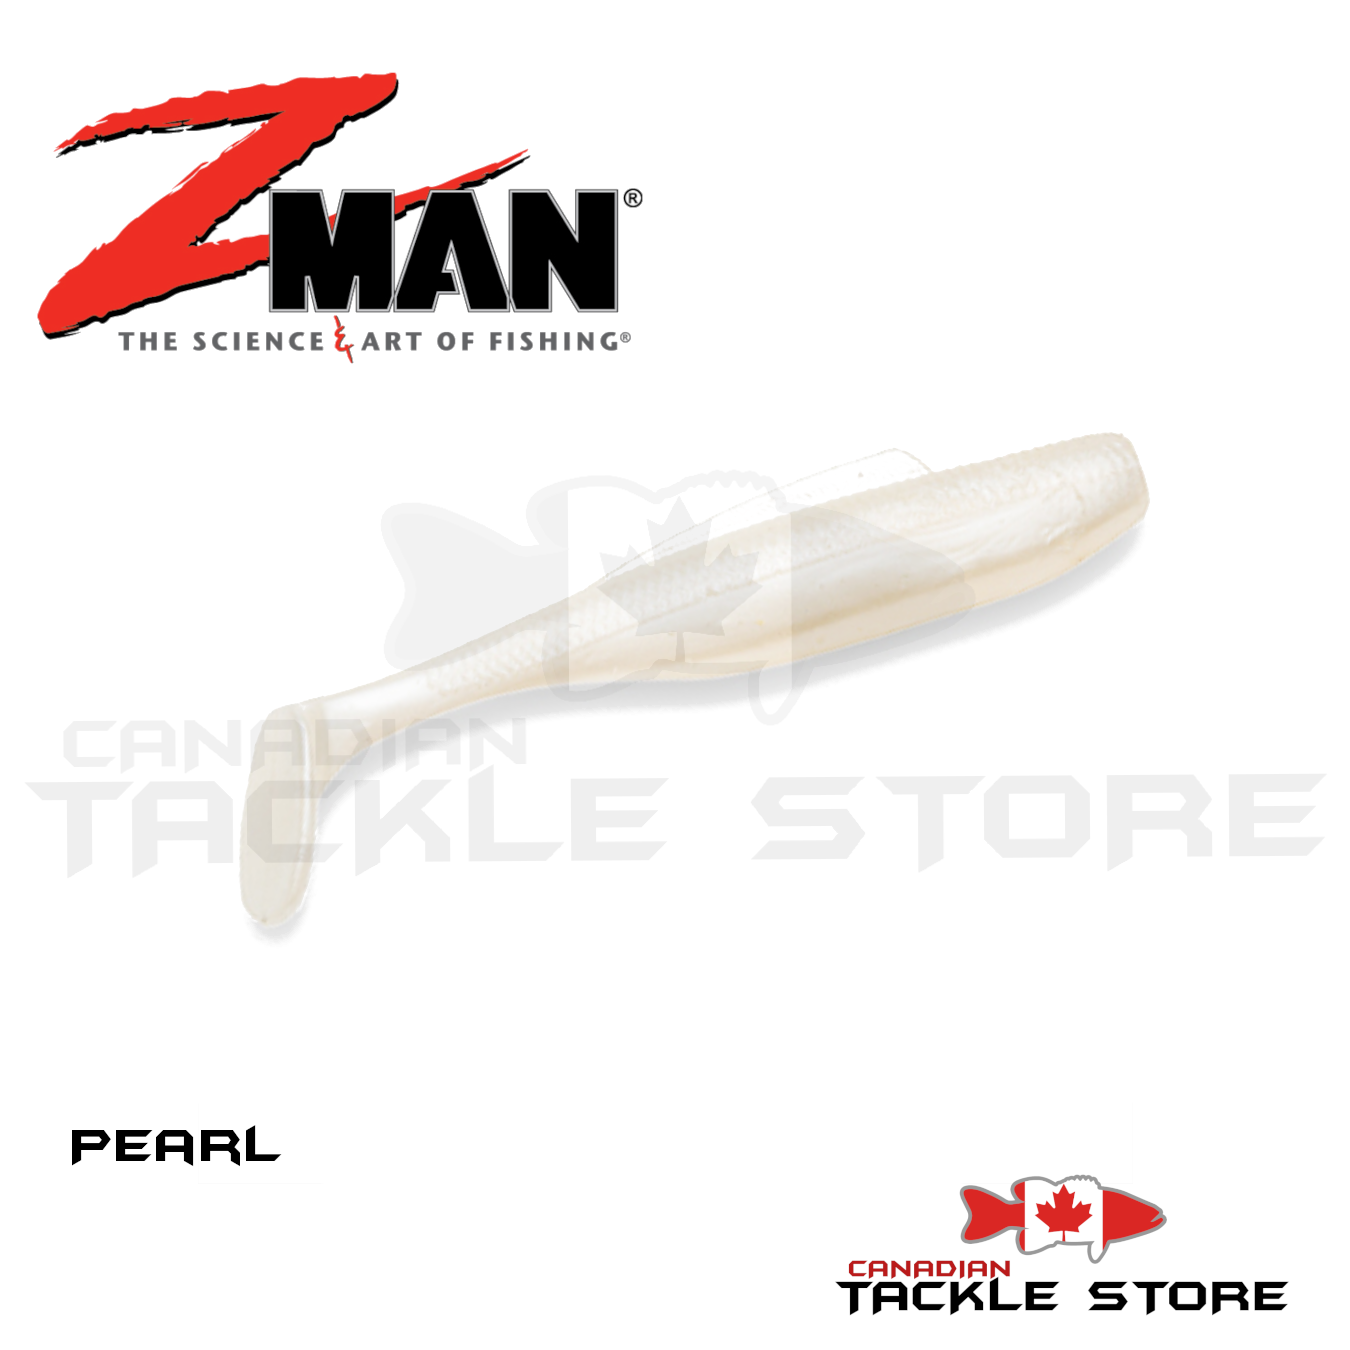 Z-Man Products – WOO! TUNGSTEN